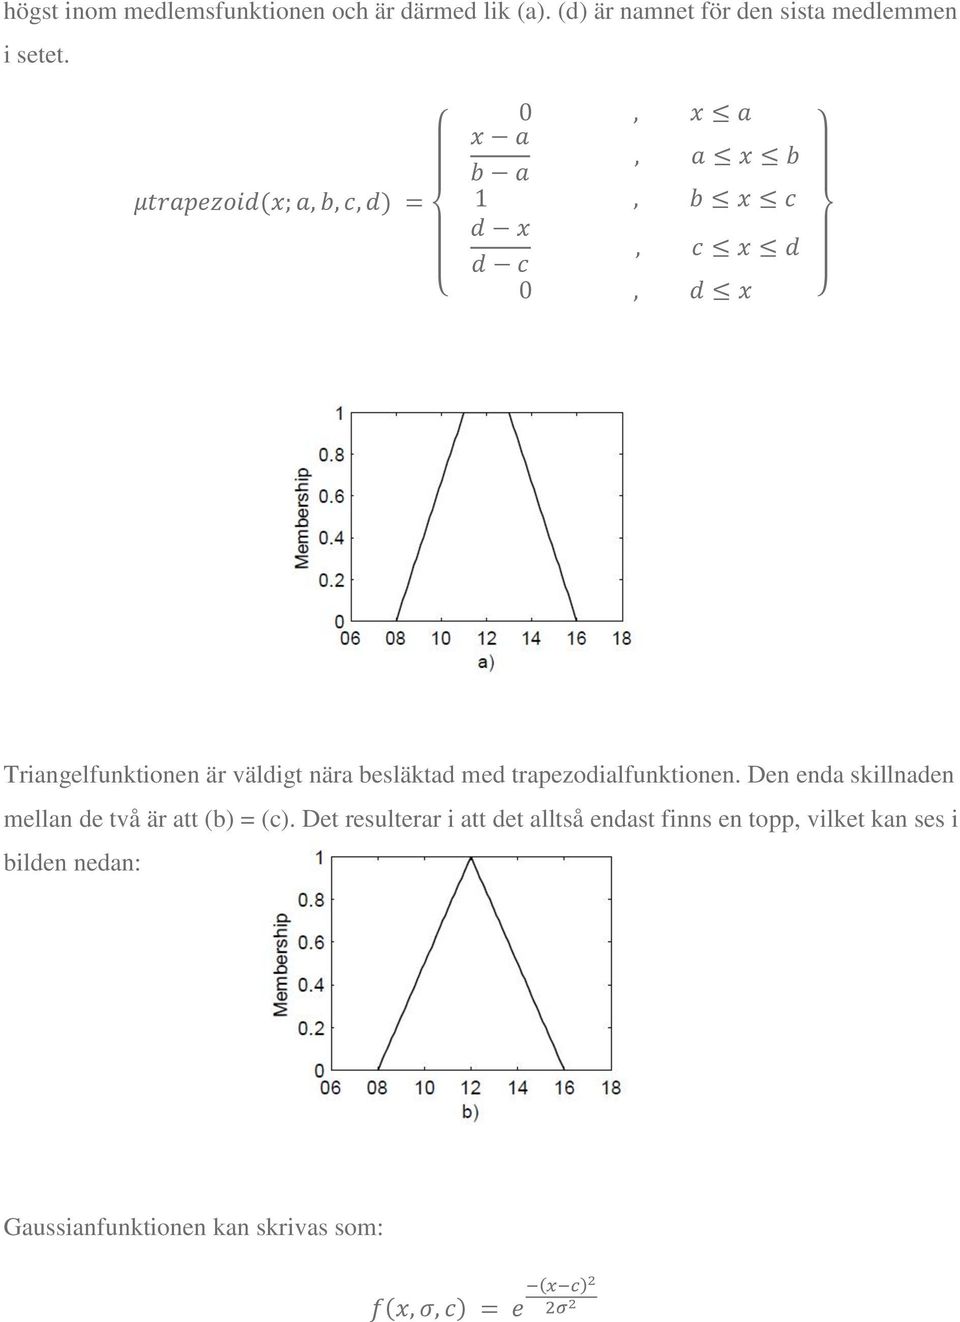 Triangelfunktionen är väldigt nära besläktad med trapezodialfunktionen.